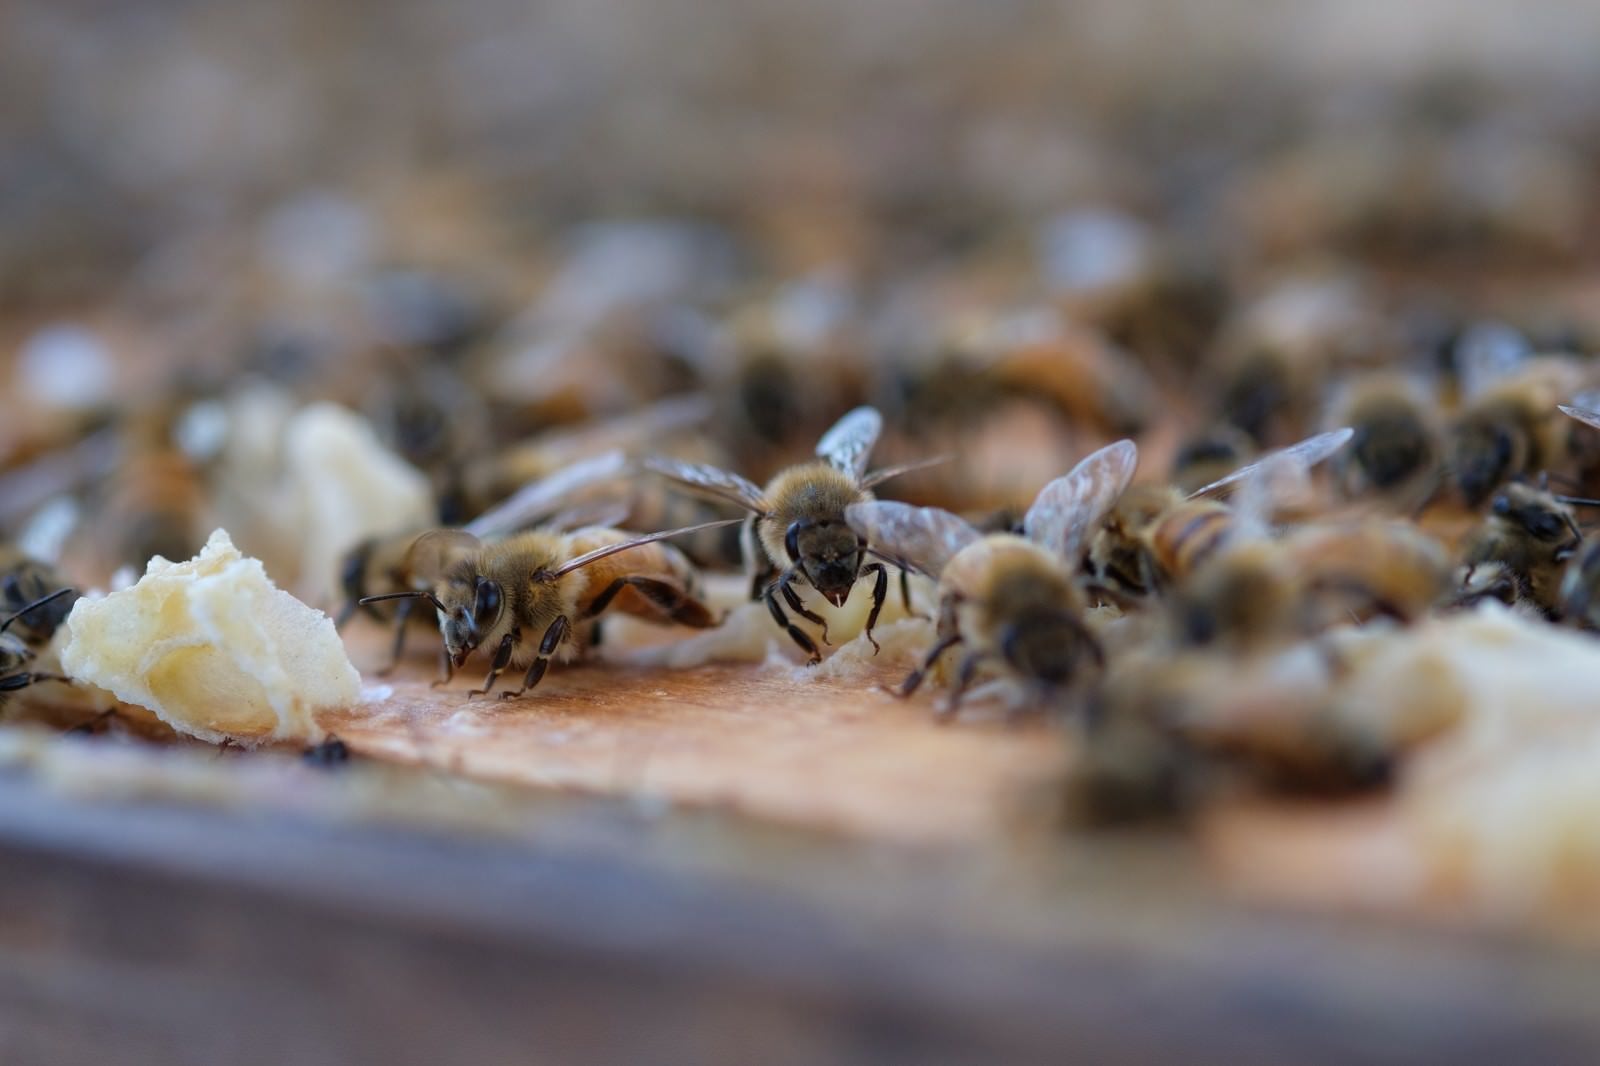 「至る所に蜜蝋で巣を拡張しようとする働き蜂」の写真